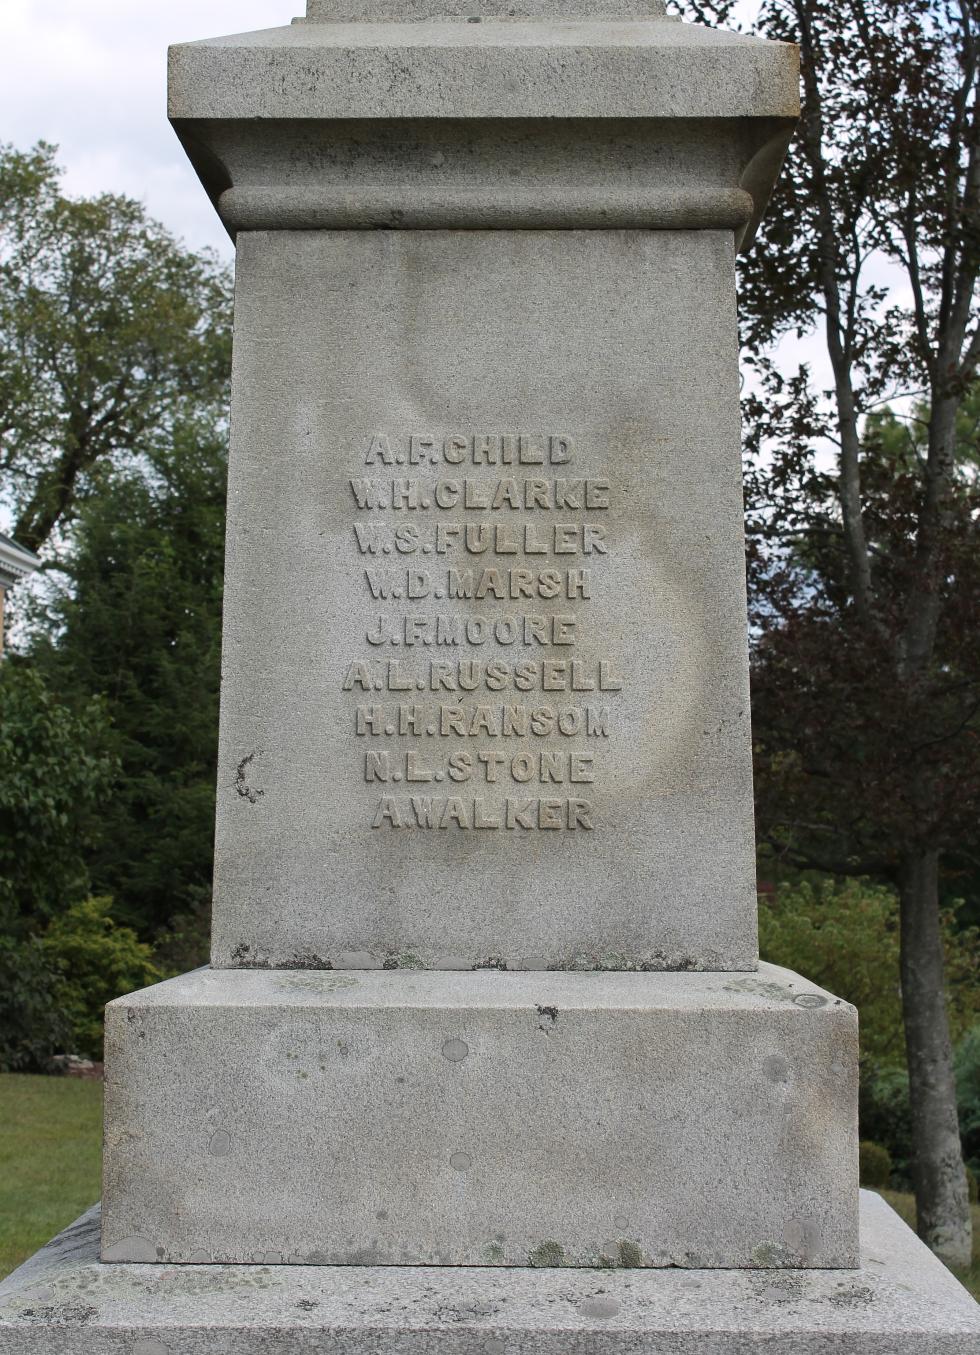 Sturbridge Massachusetts Civil War Memorial